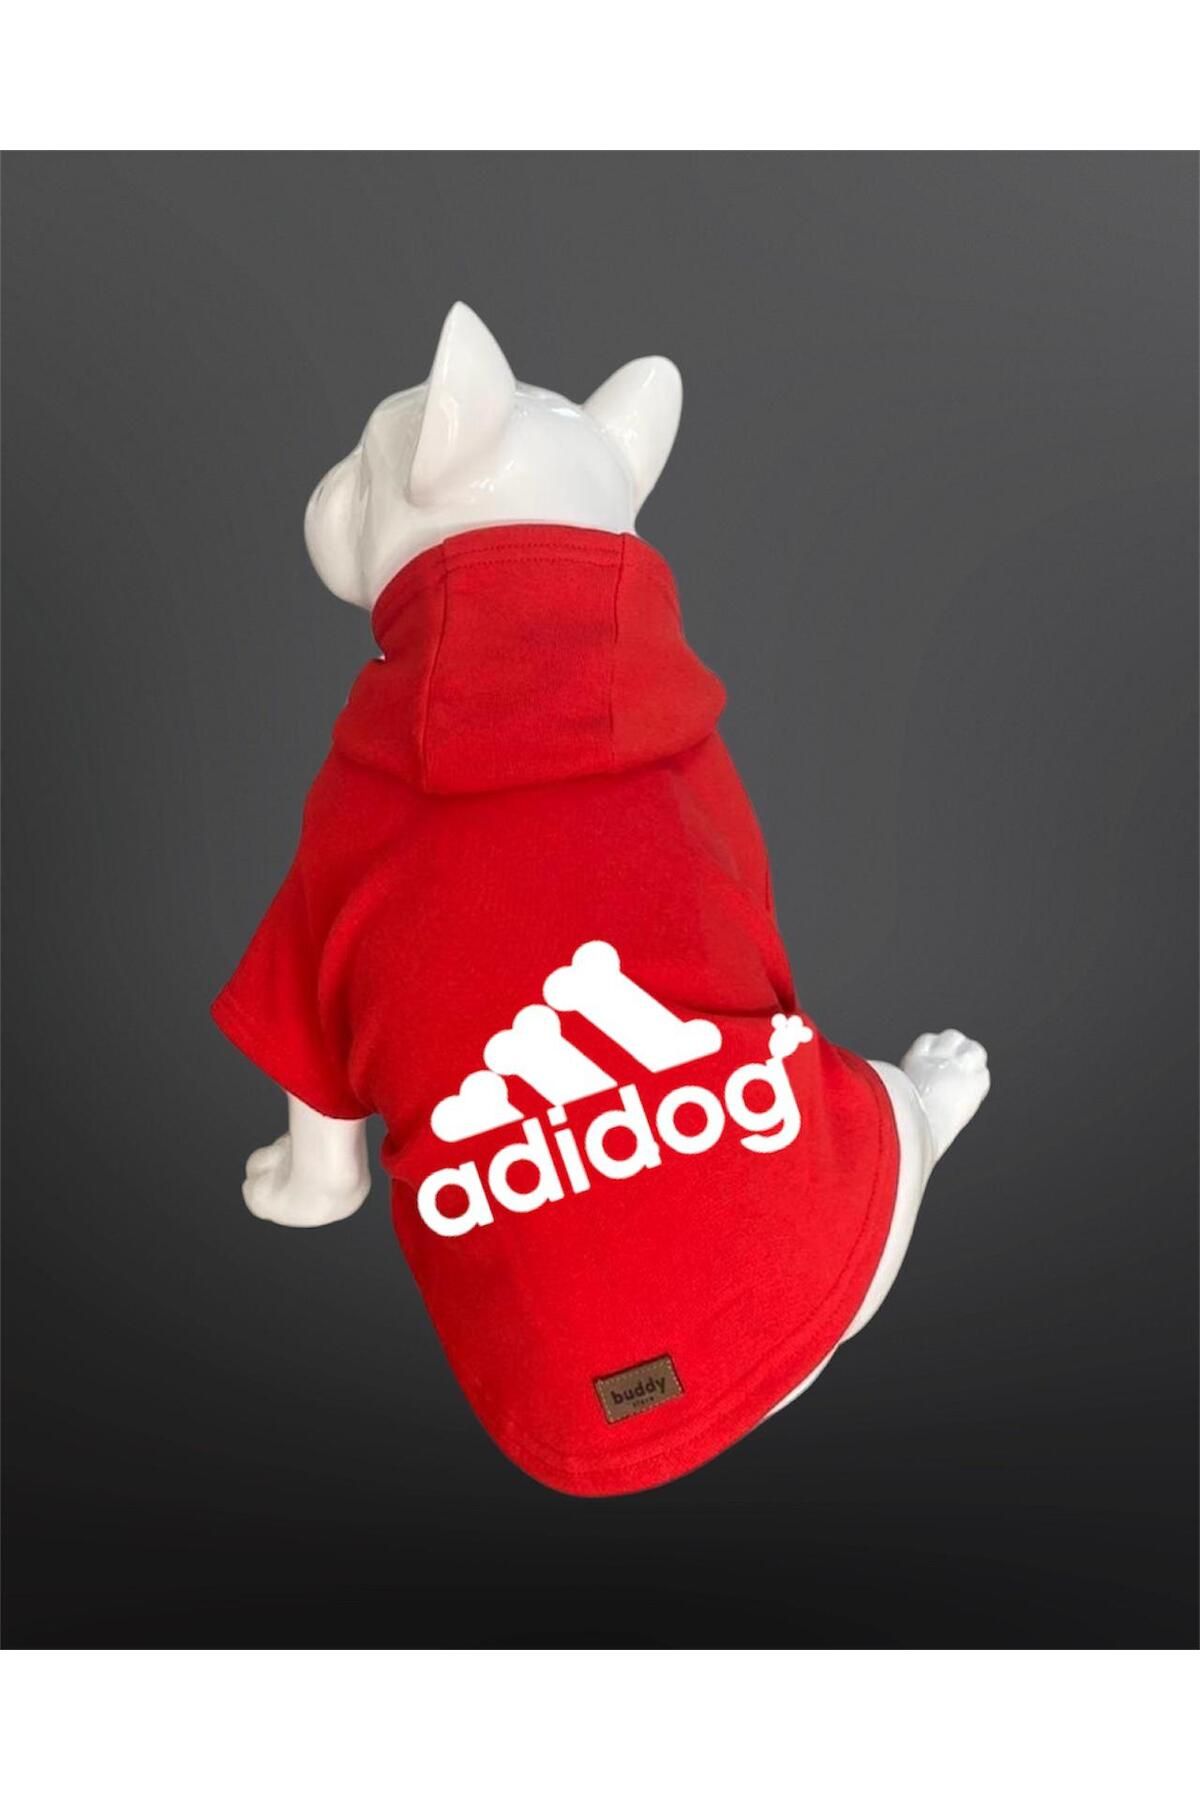 Buddy Store Kedi & Köpek Kıyafeti Sweatshirt - Adidog Baskılı Kırmızı Sweatshirt